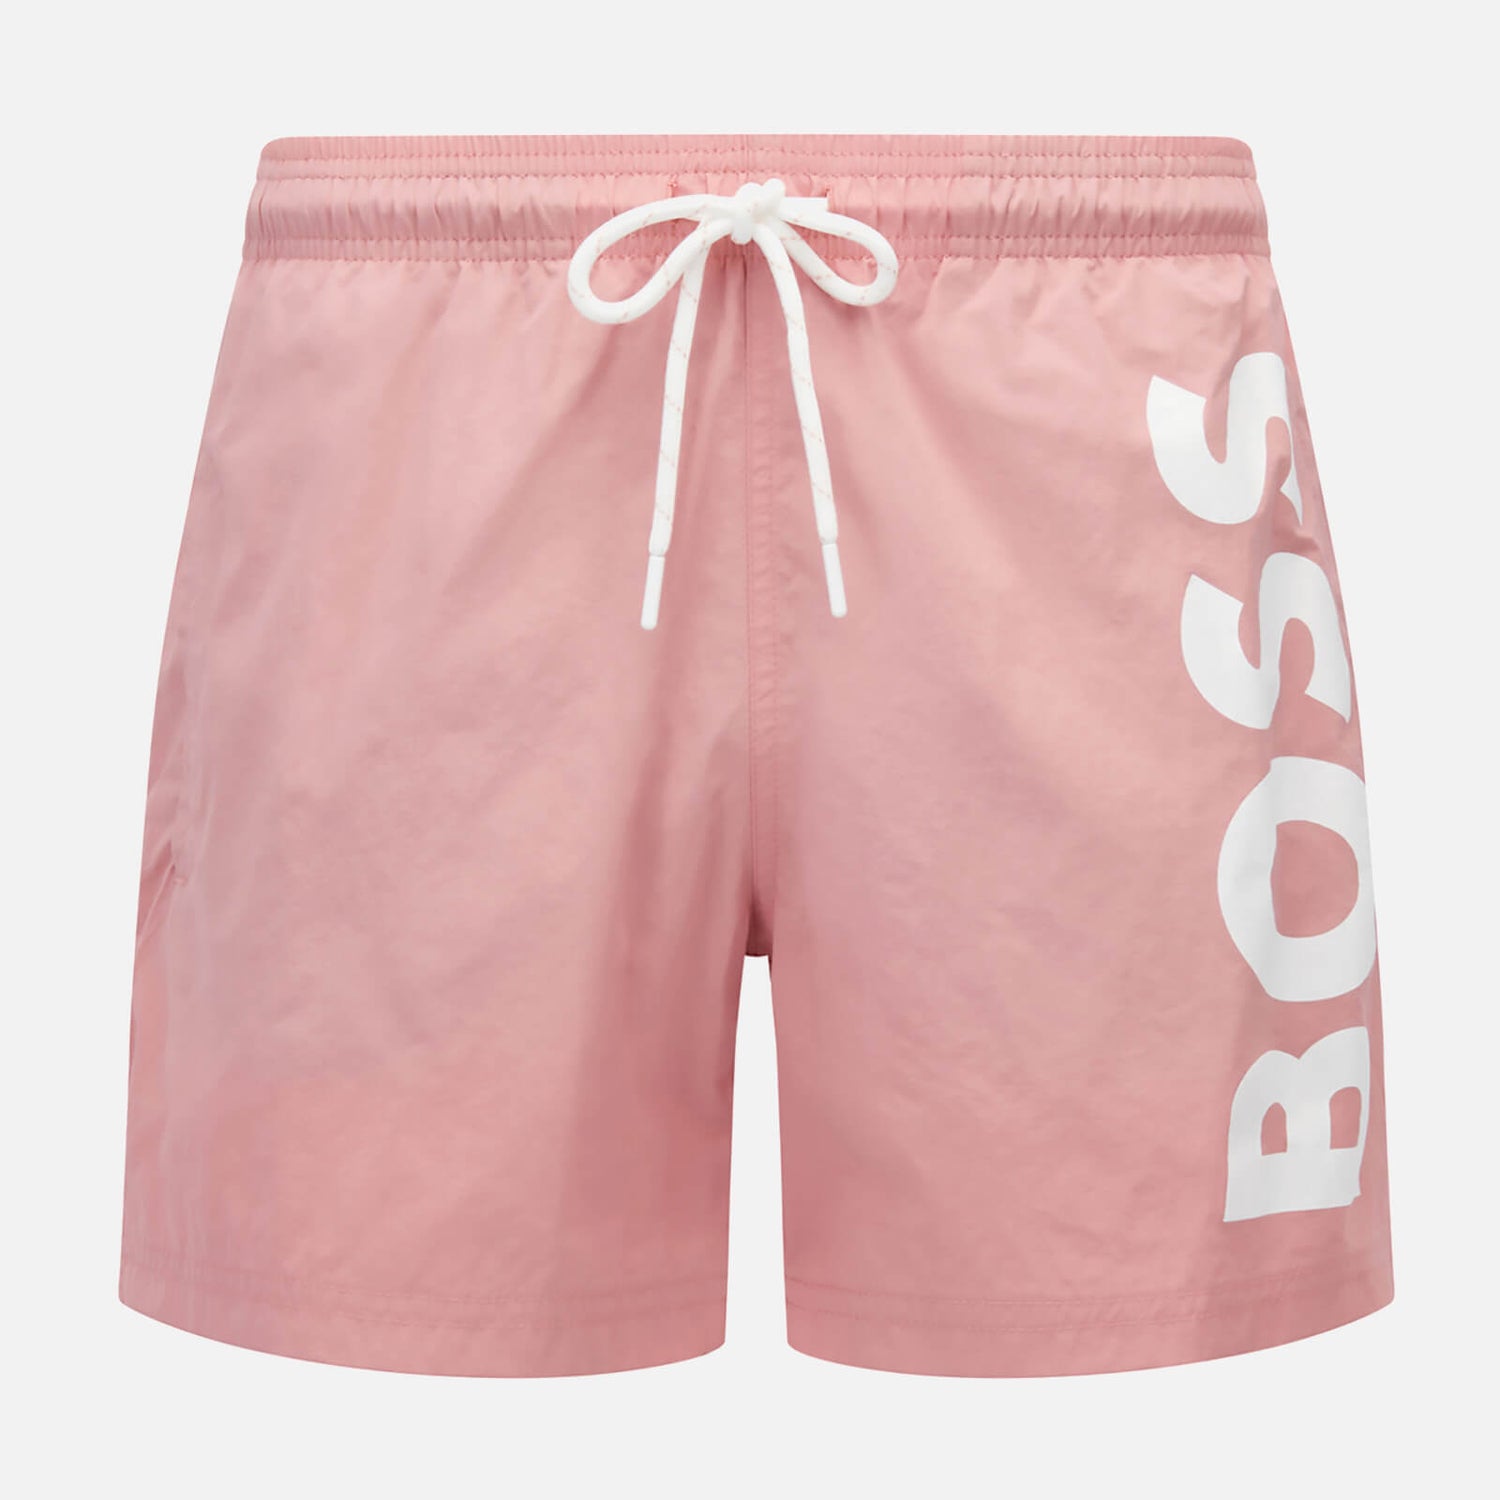 BOSS Bodywear Men's Octopus Swim Shorts - Open Pink - S